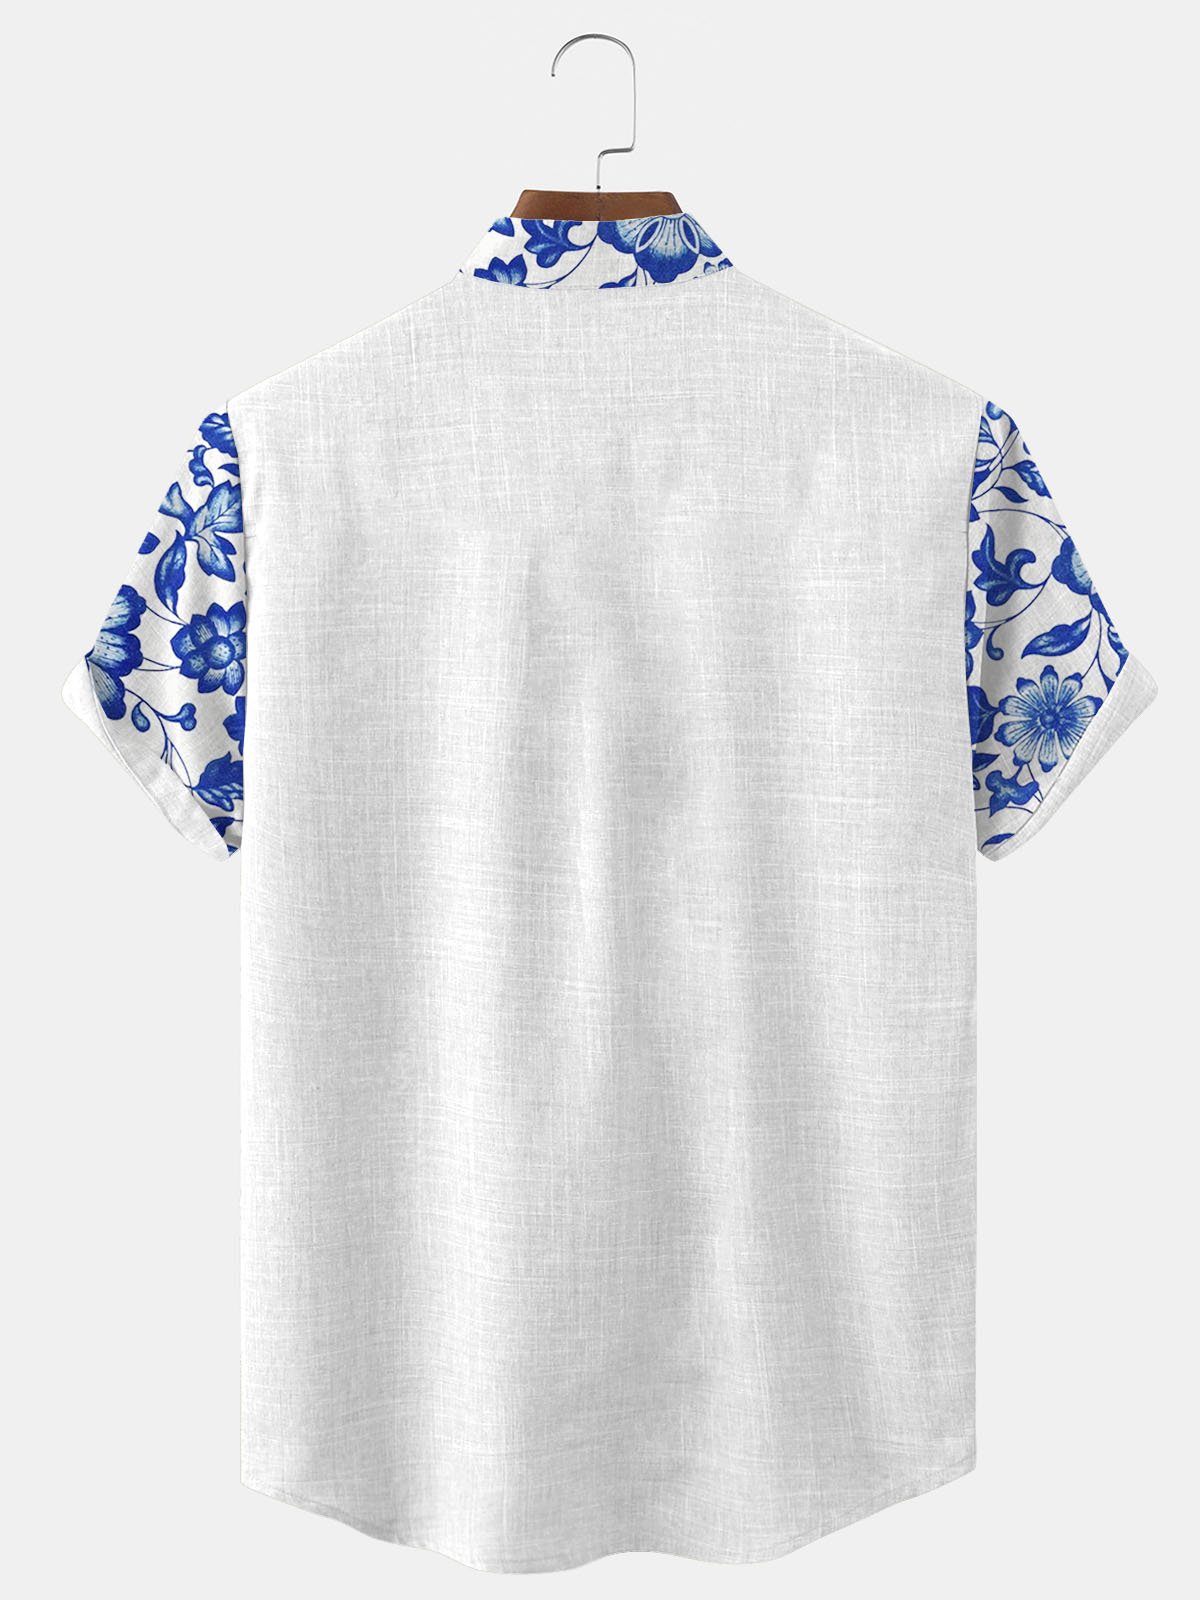 Royaura Nature  Fiber Casual Shirts Natural Breathable Summer Lightweight Hawaiian Shirts